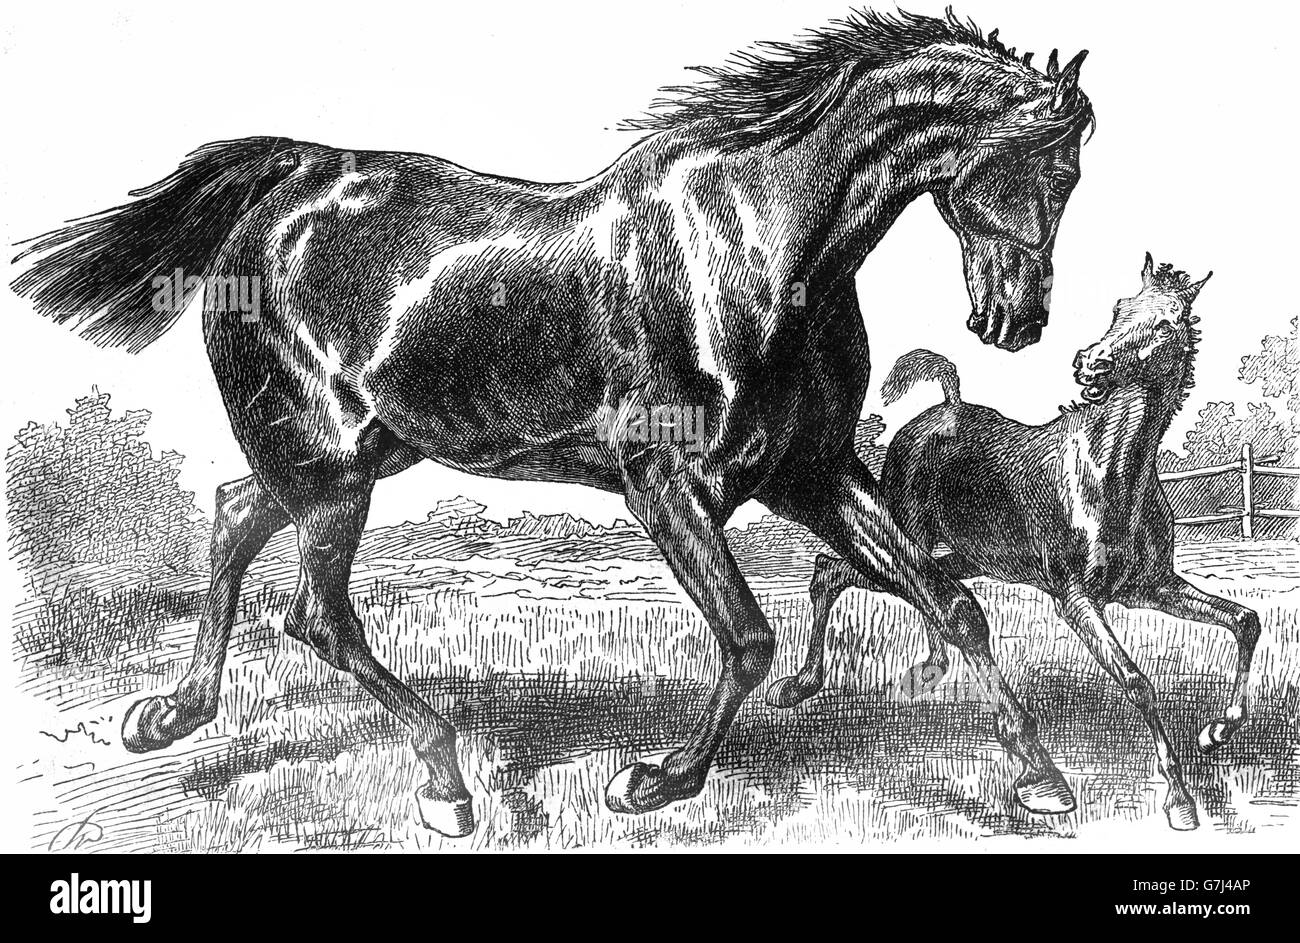 Trakehner Pferde, leichtes Warmblut Brut des Pferds, Illustration aus Buch datiert 1904 Stockfoto